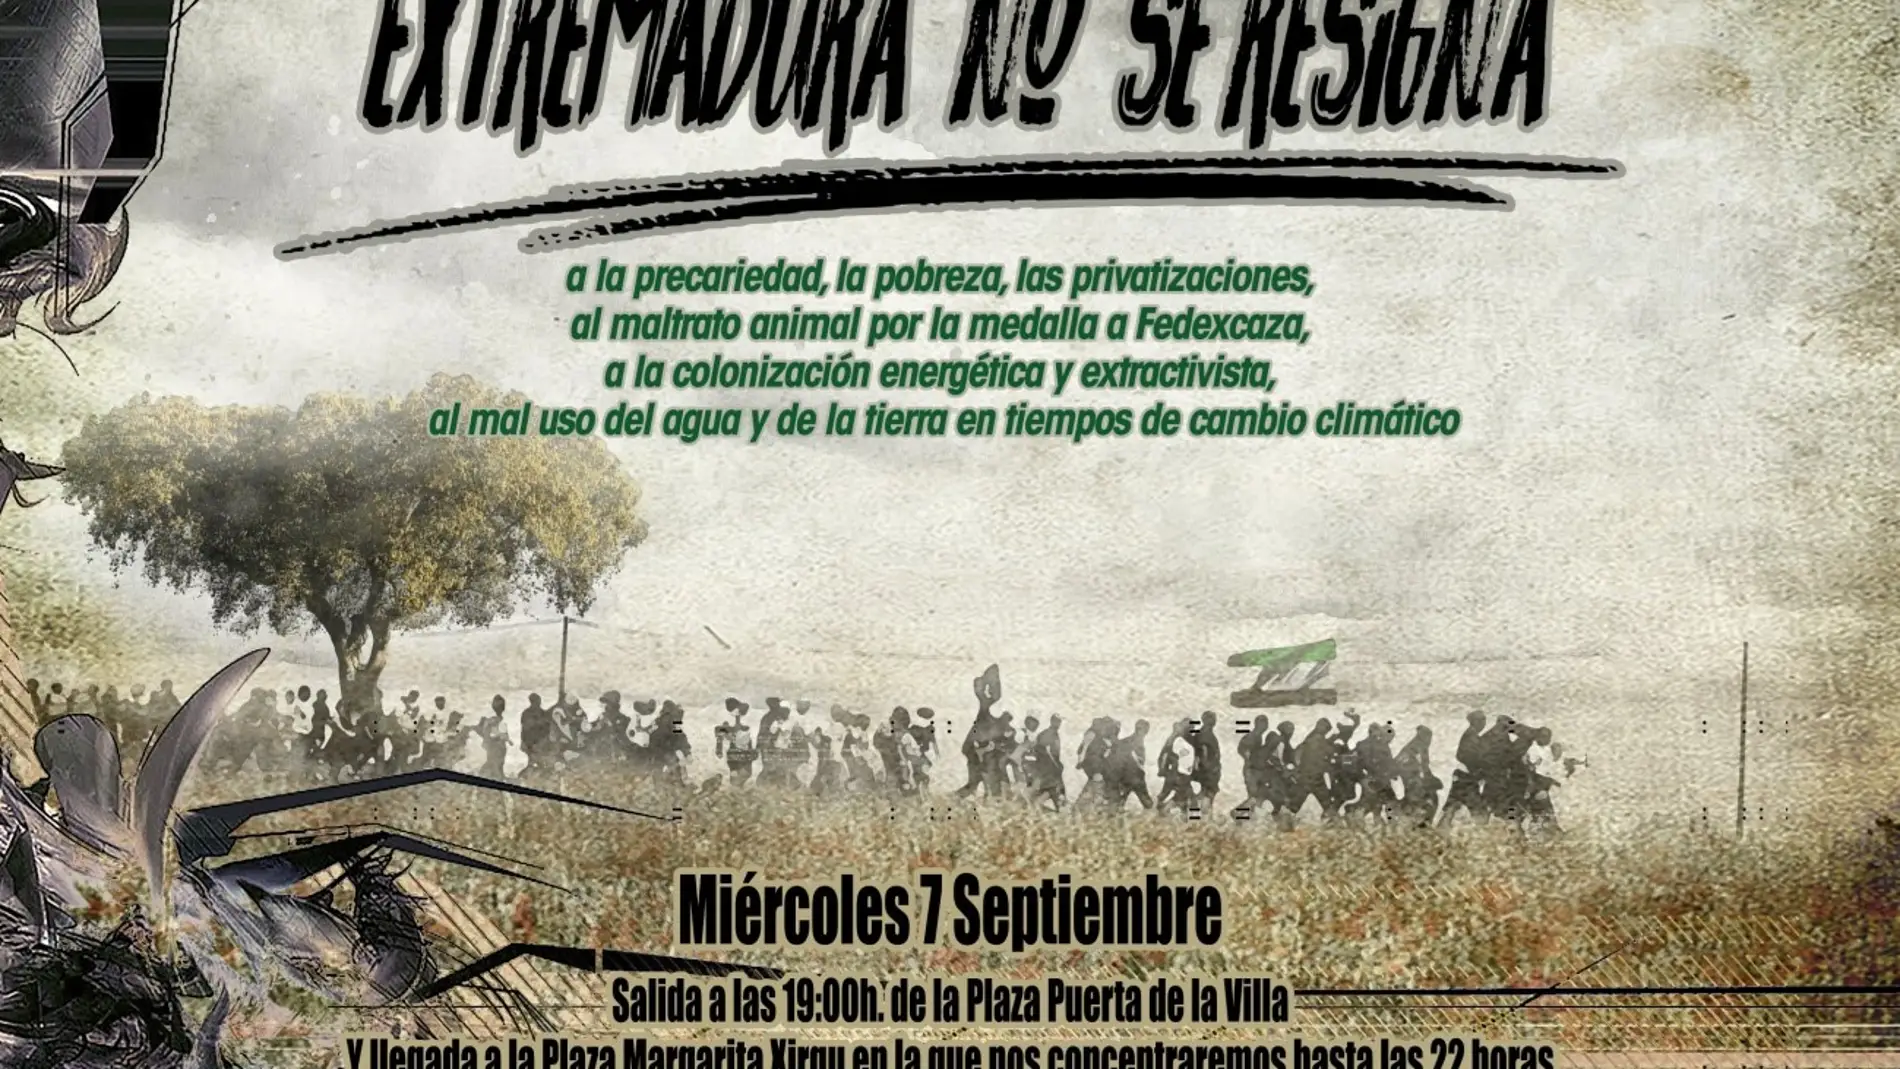 Bajo el lema "Extremadura no se resigna" una treintena de colectivos se manifestarán este miércoles en Mérida